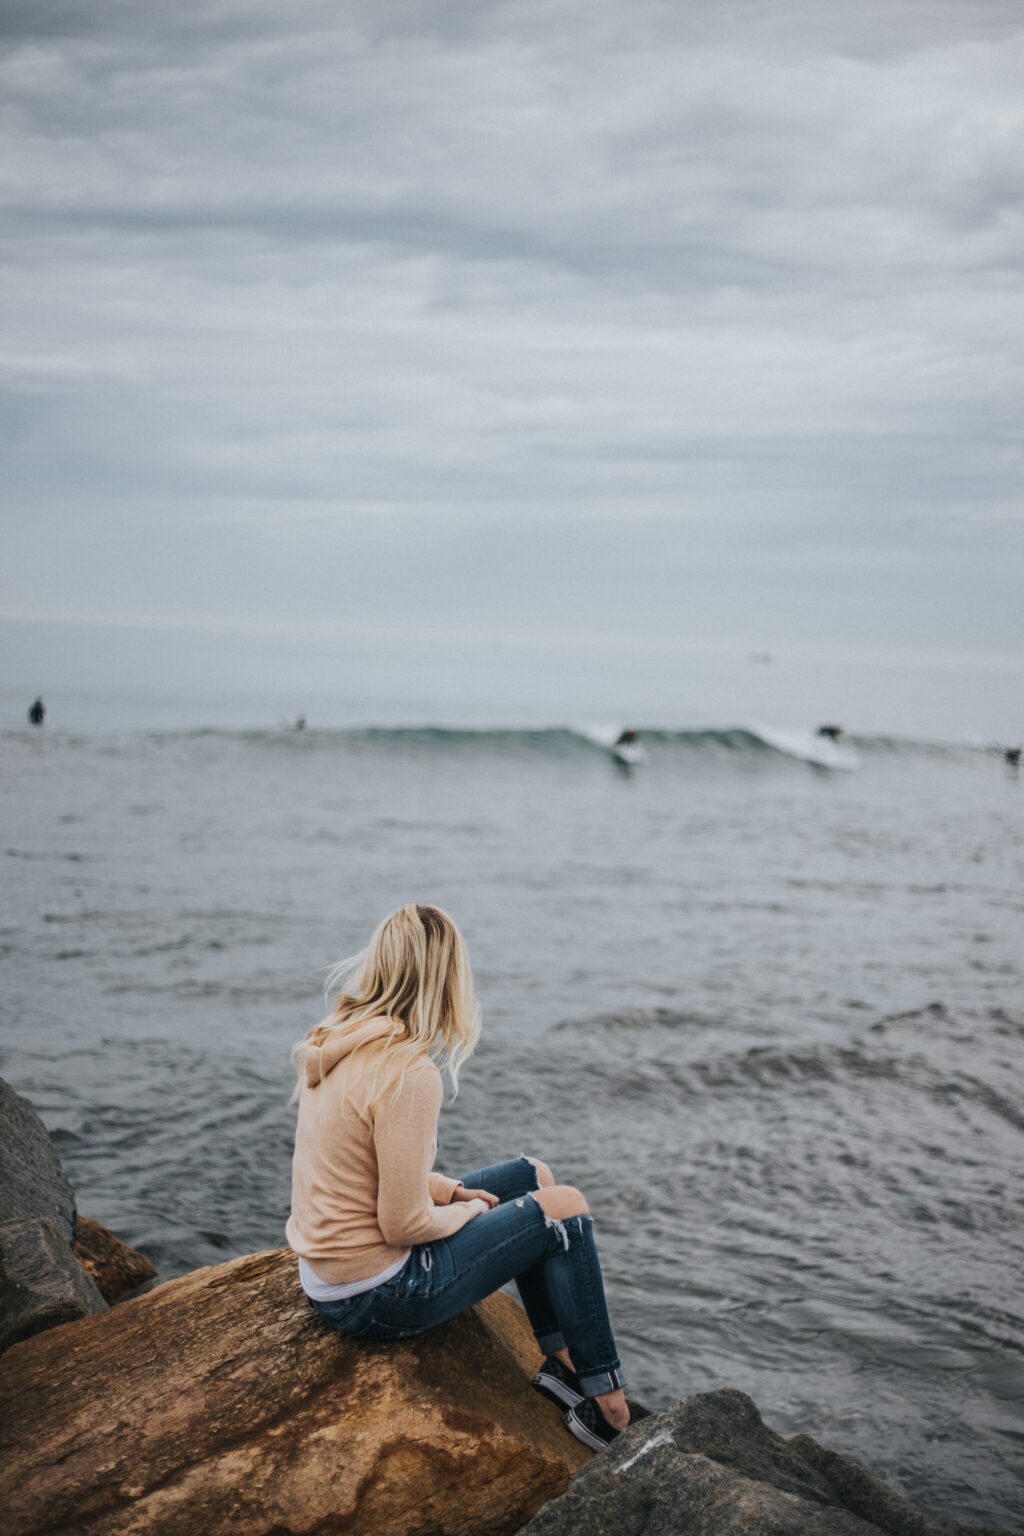 woman sitting on rock near body of water